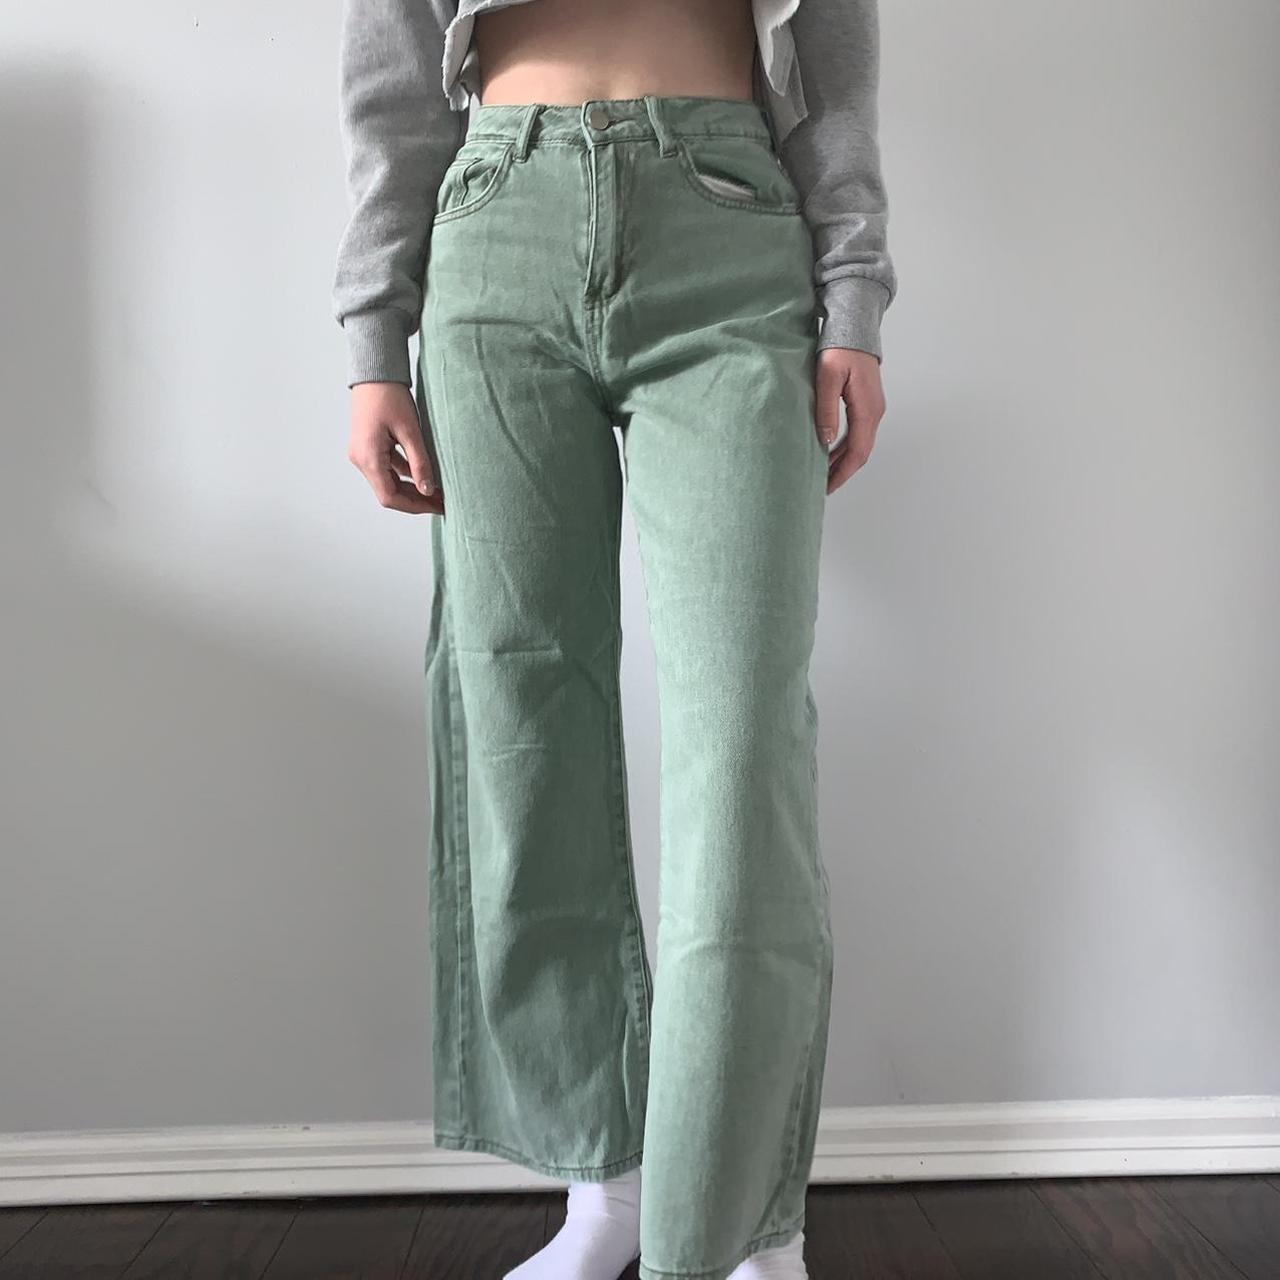 SHEIN Women's Green Jeans | Depop